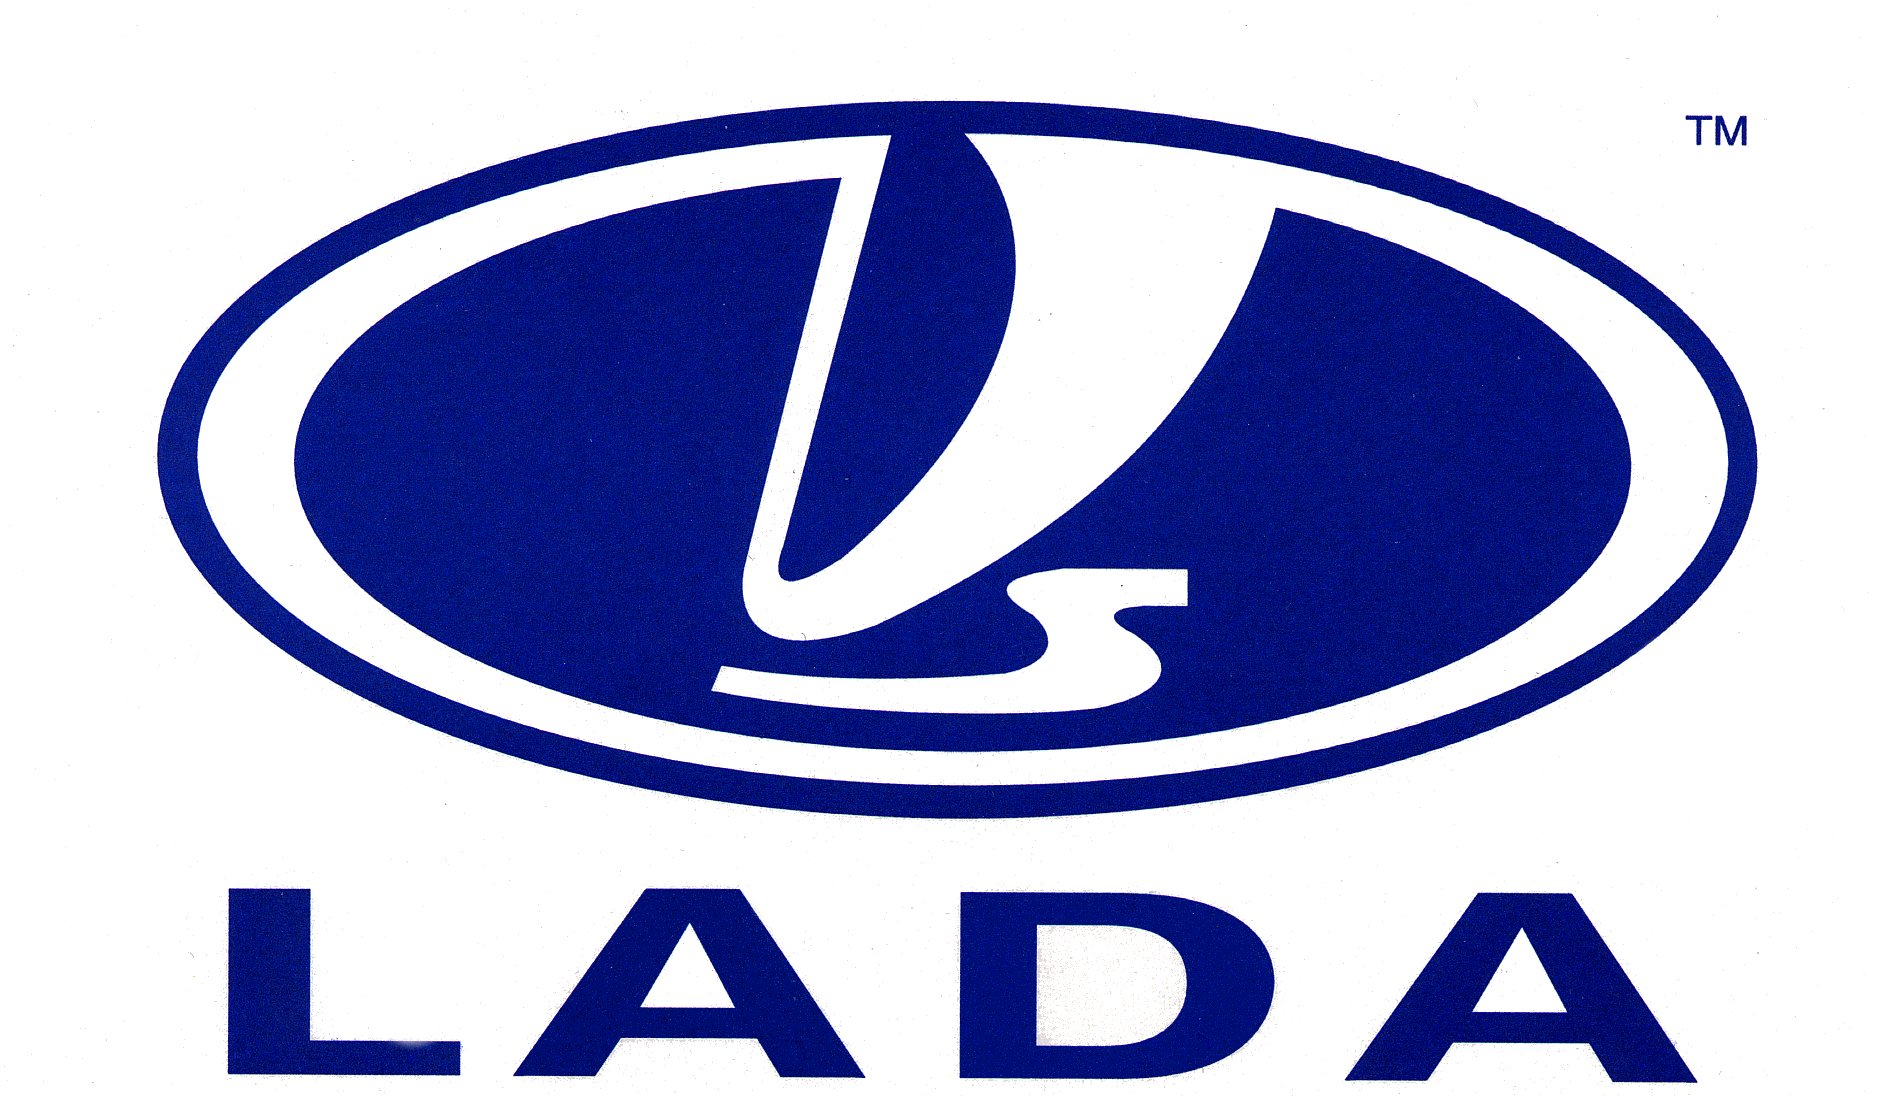 lada-logo-wallpaper.jpg